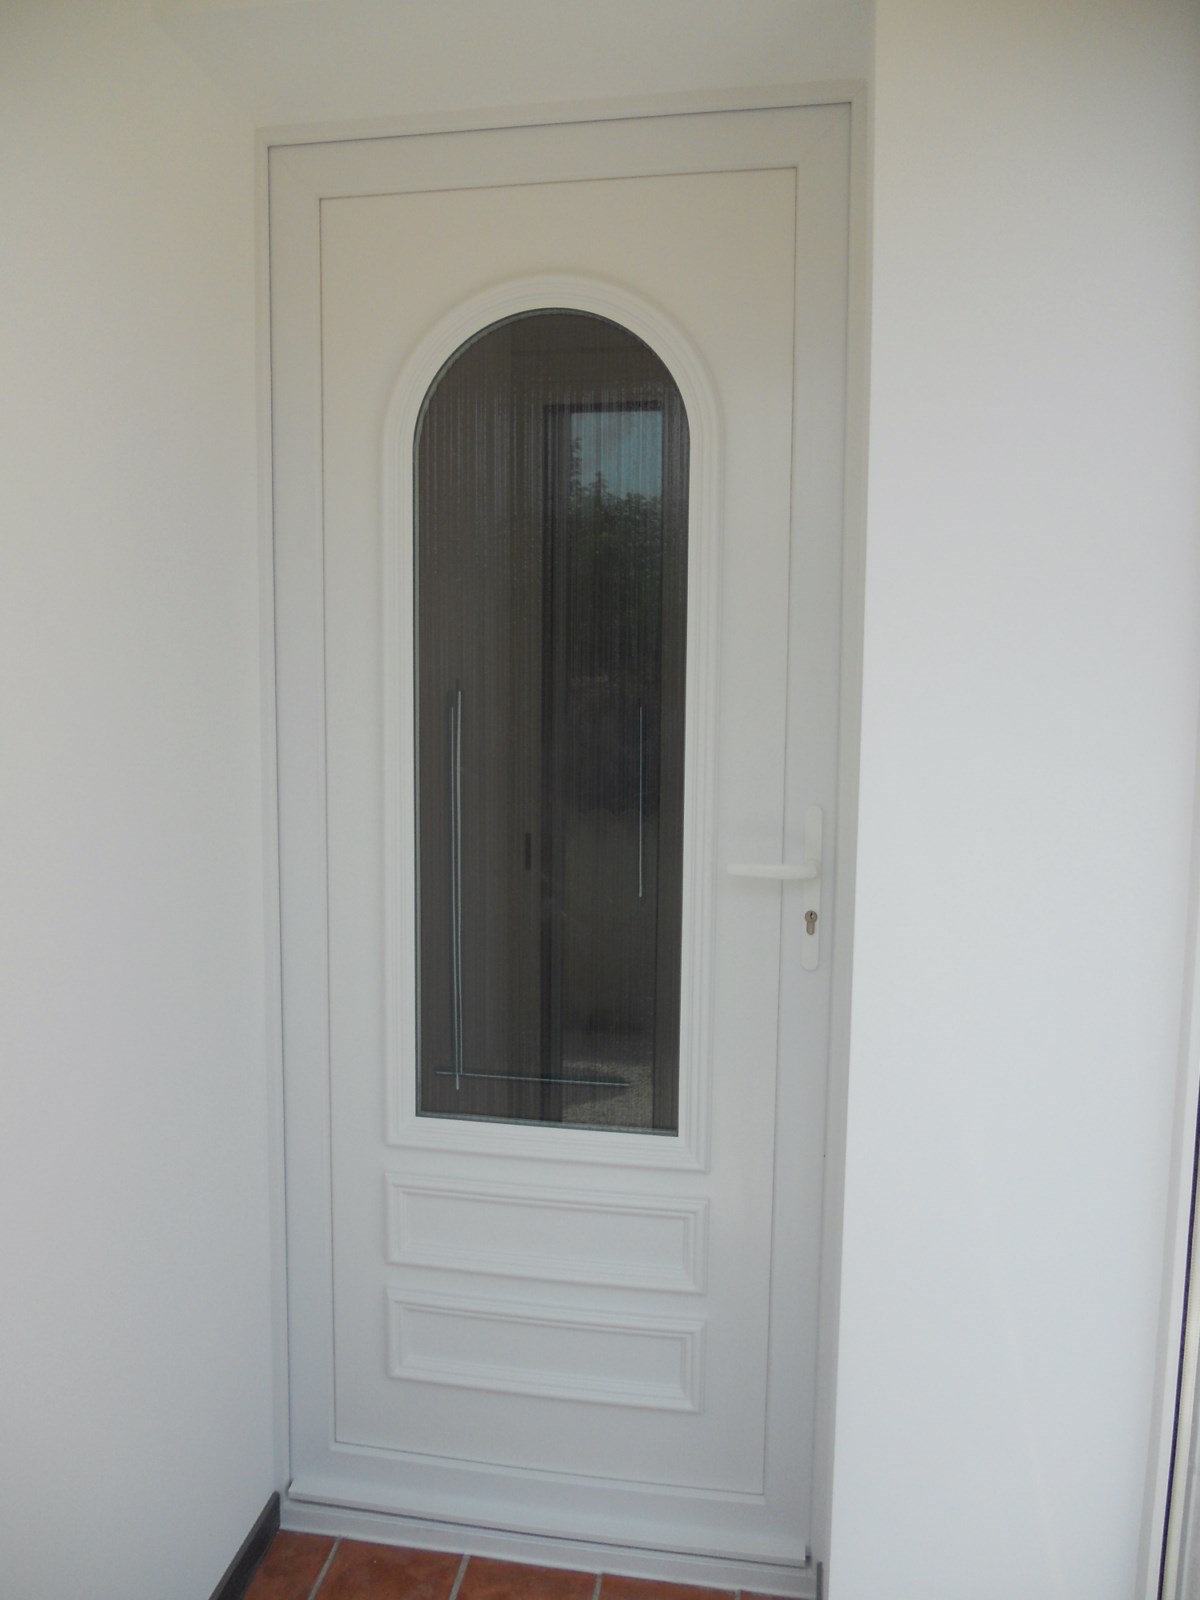 Pose d'une porte d'entrée PVC en rénovation sur mesure à hyères 83400 dans le VAR